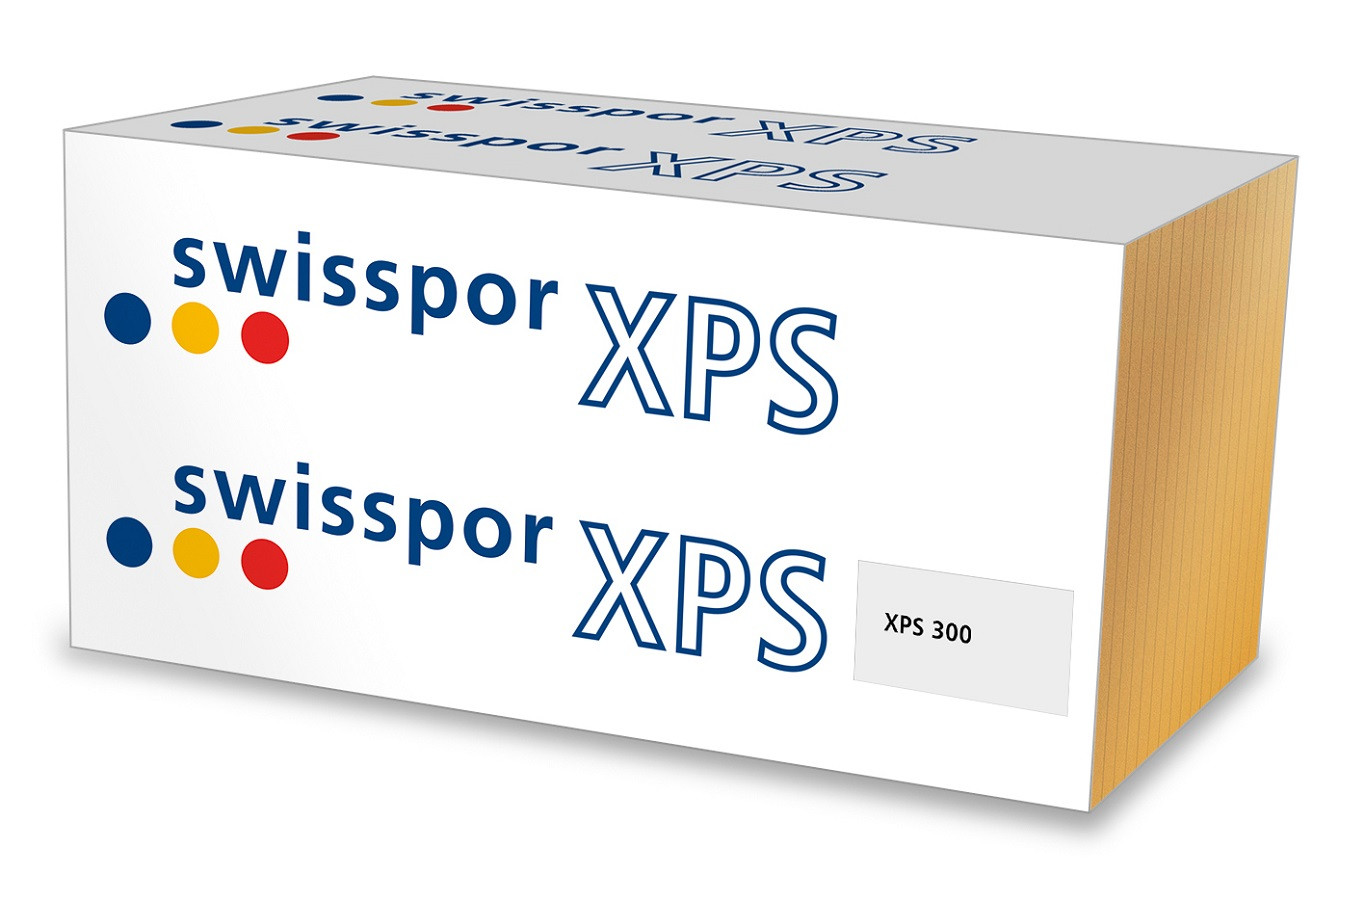 Swisspor XPS 300 L / grubość 8cm / λ 0,035 / płyta gładka / krawędzie frezowane L